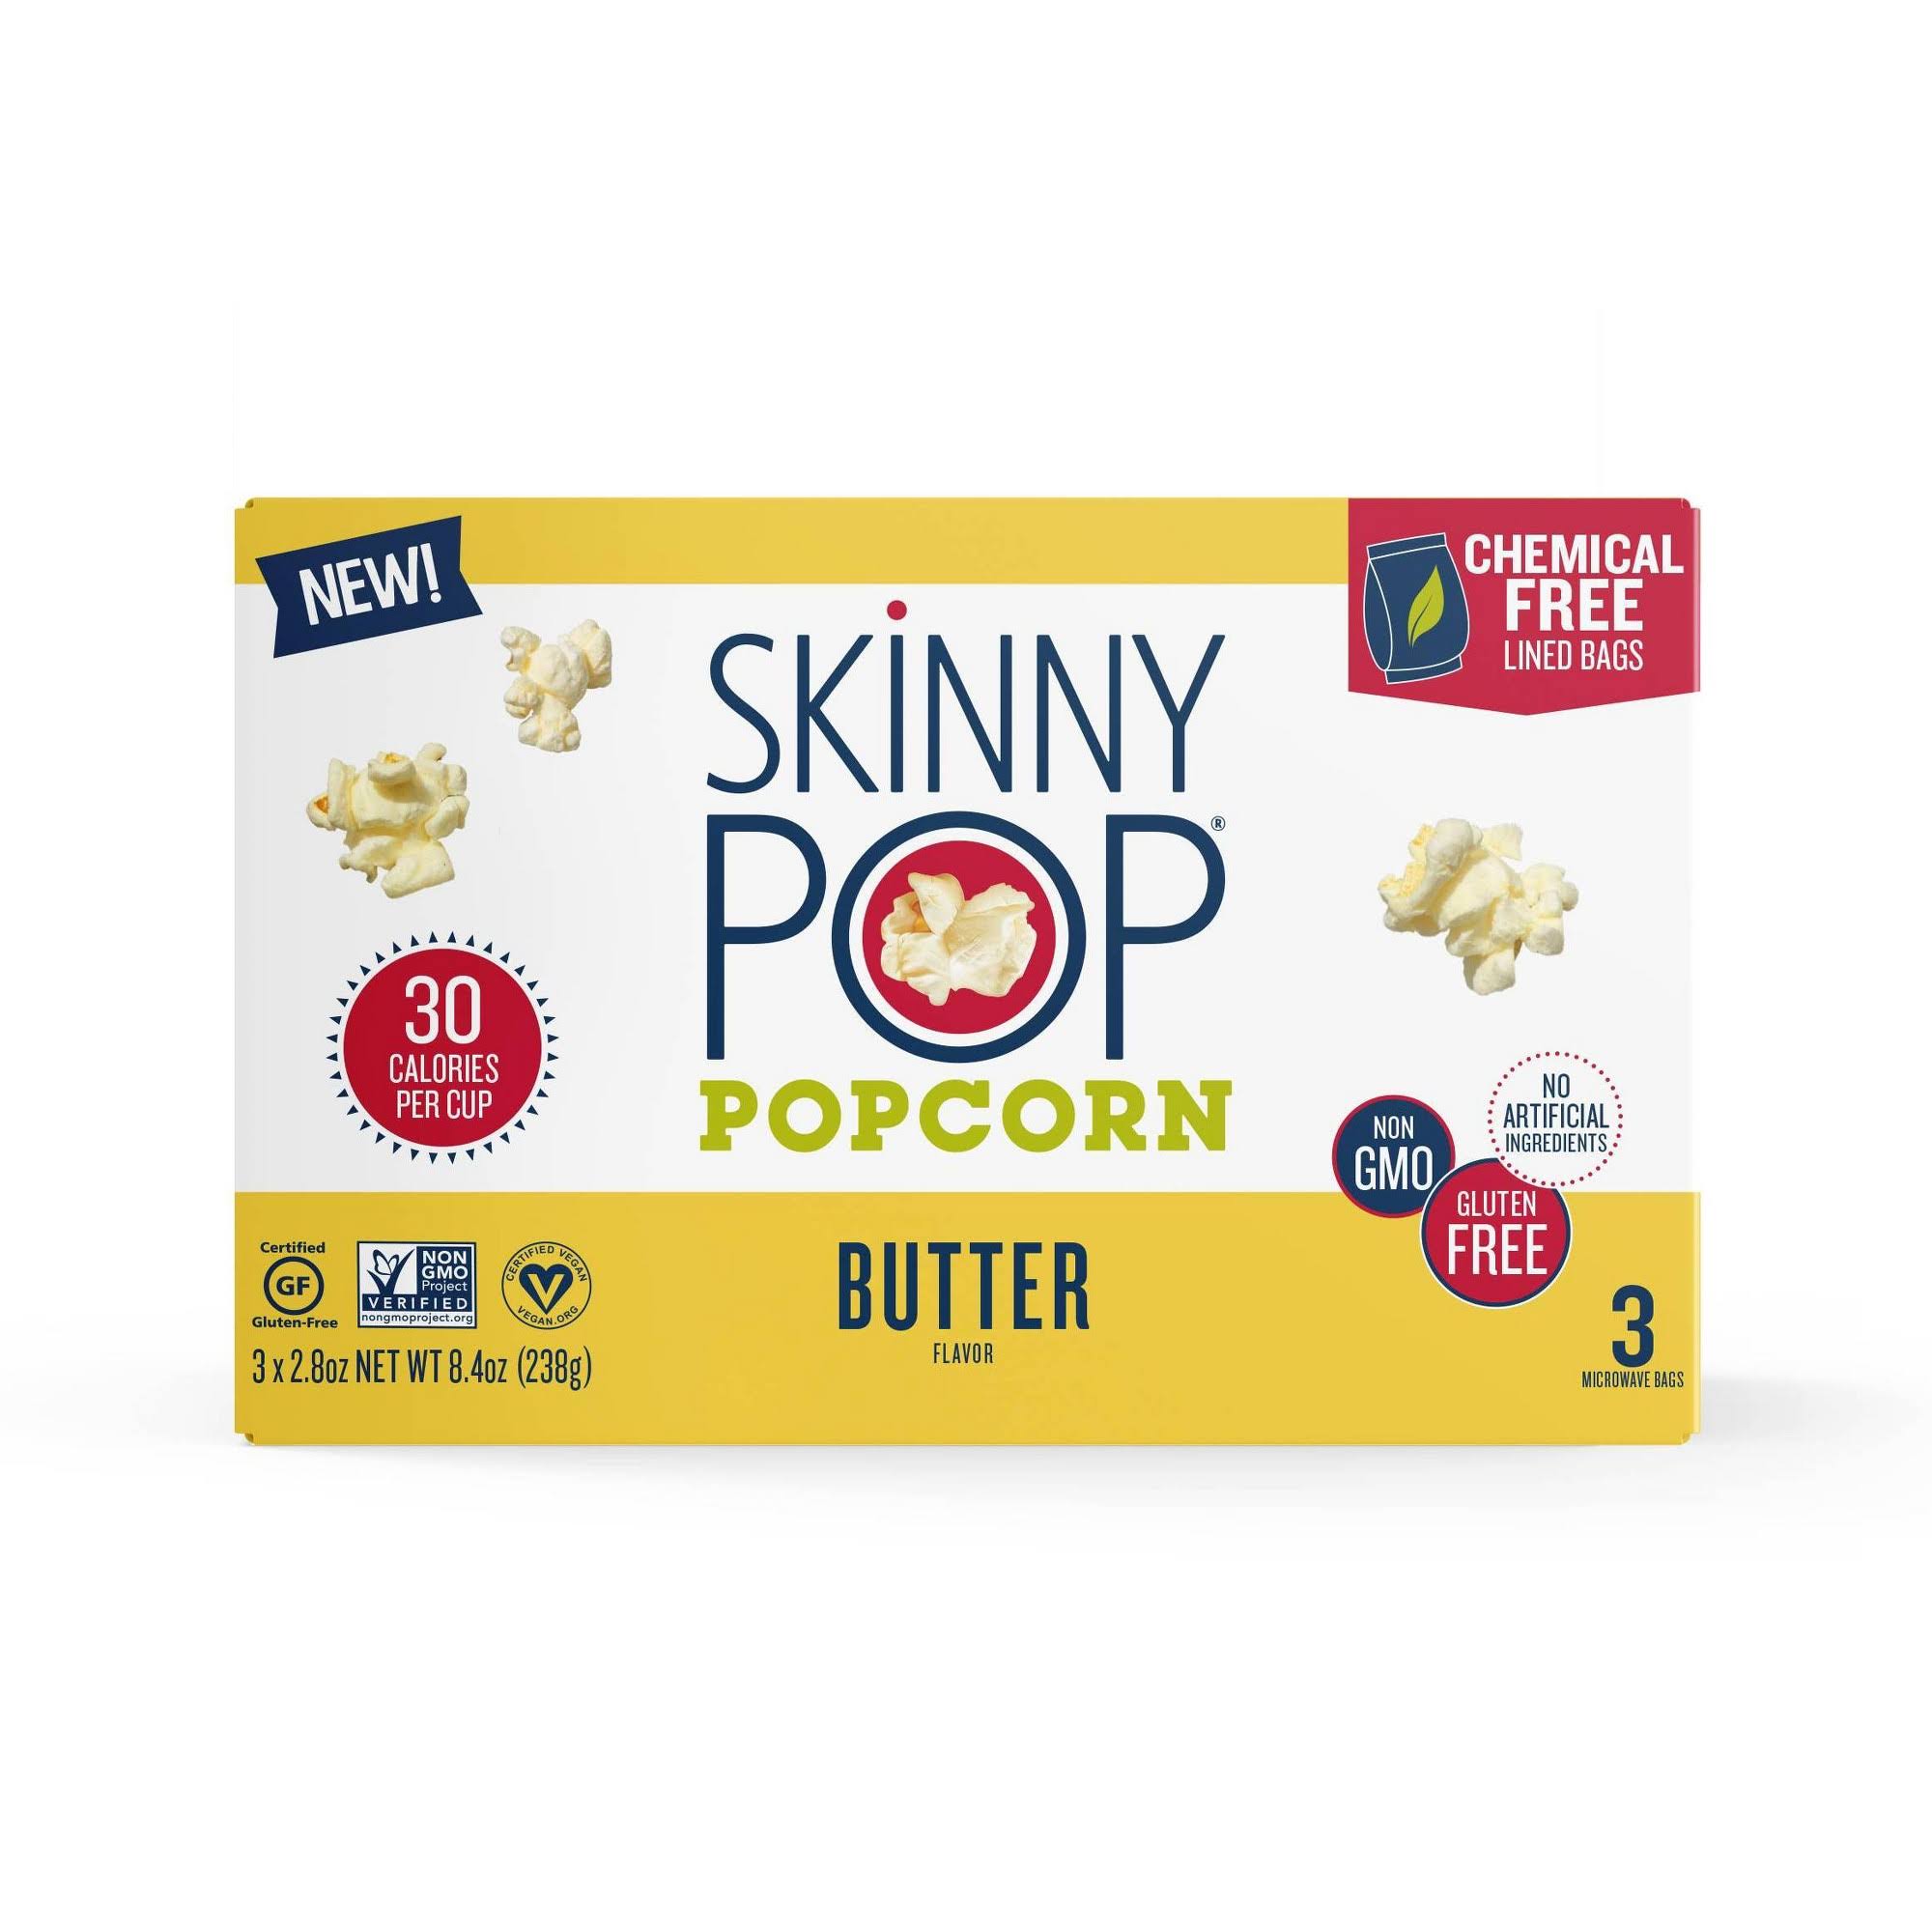 Skinny Pop Popcorn, Butter Flavor - 3 pack, 2.8 oz bags